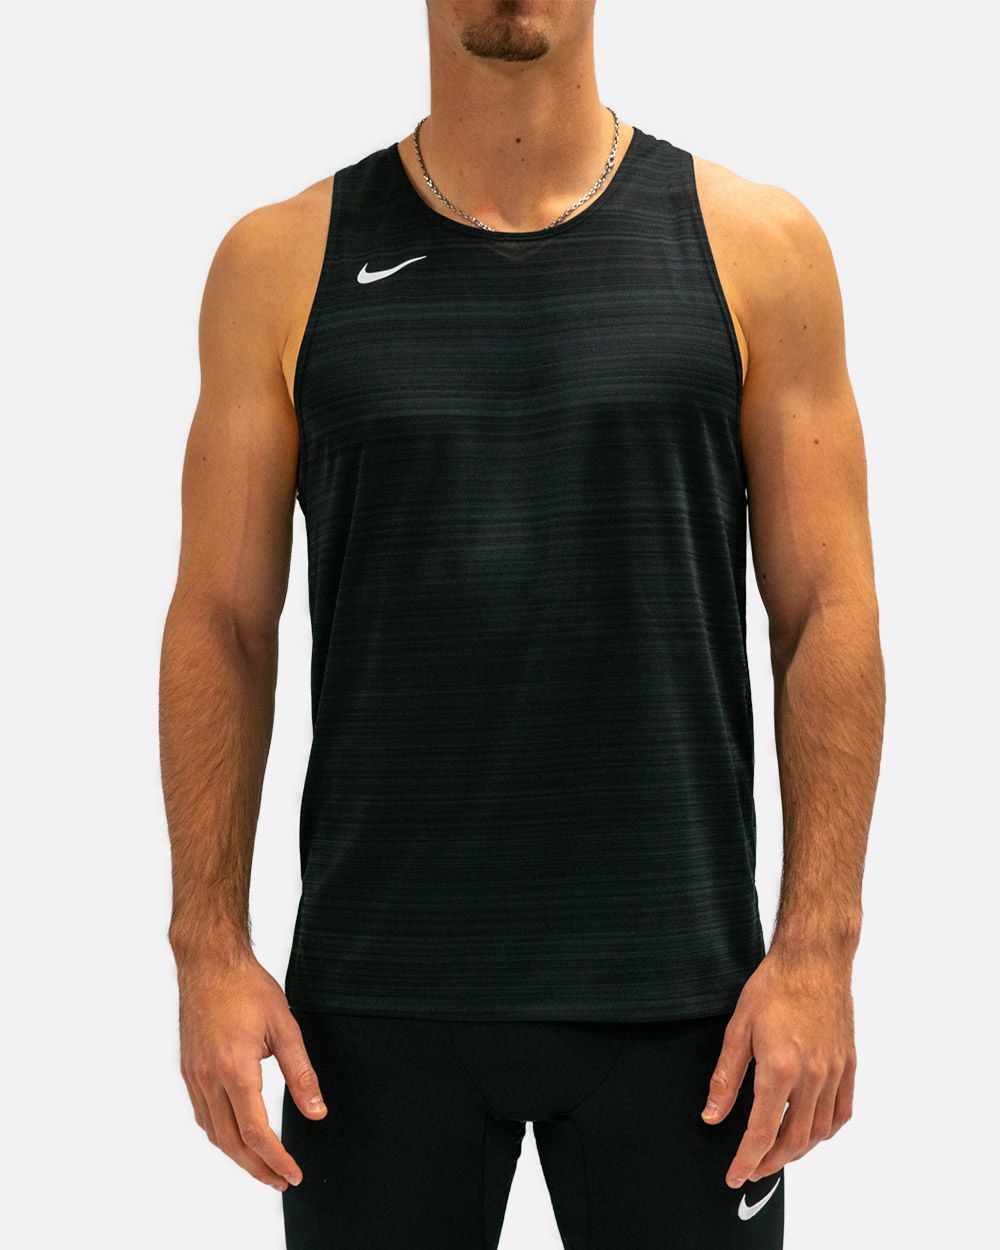 Débardeur Running Nike Homme pas cher - Neuf et occasion à prix